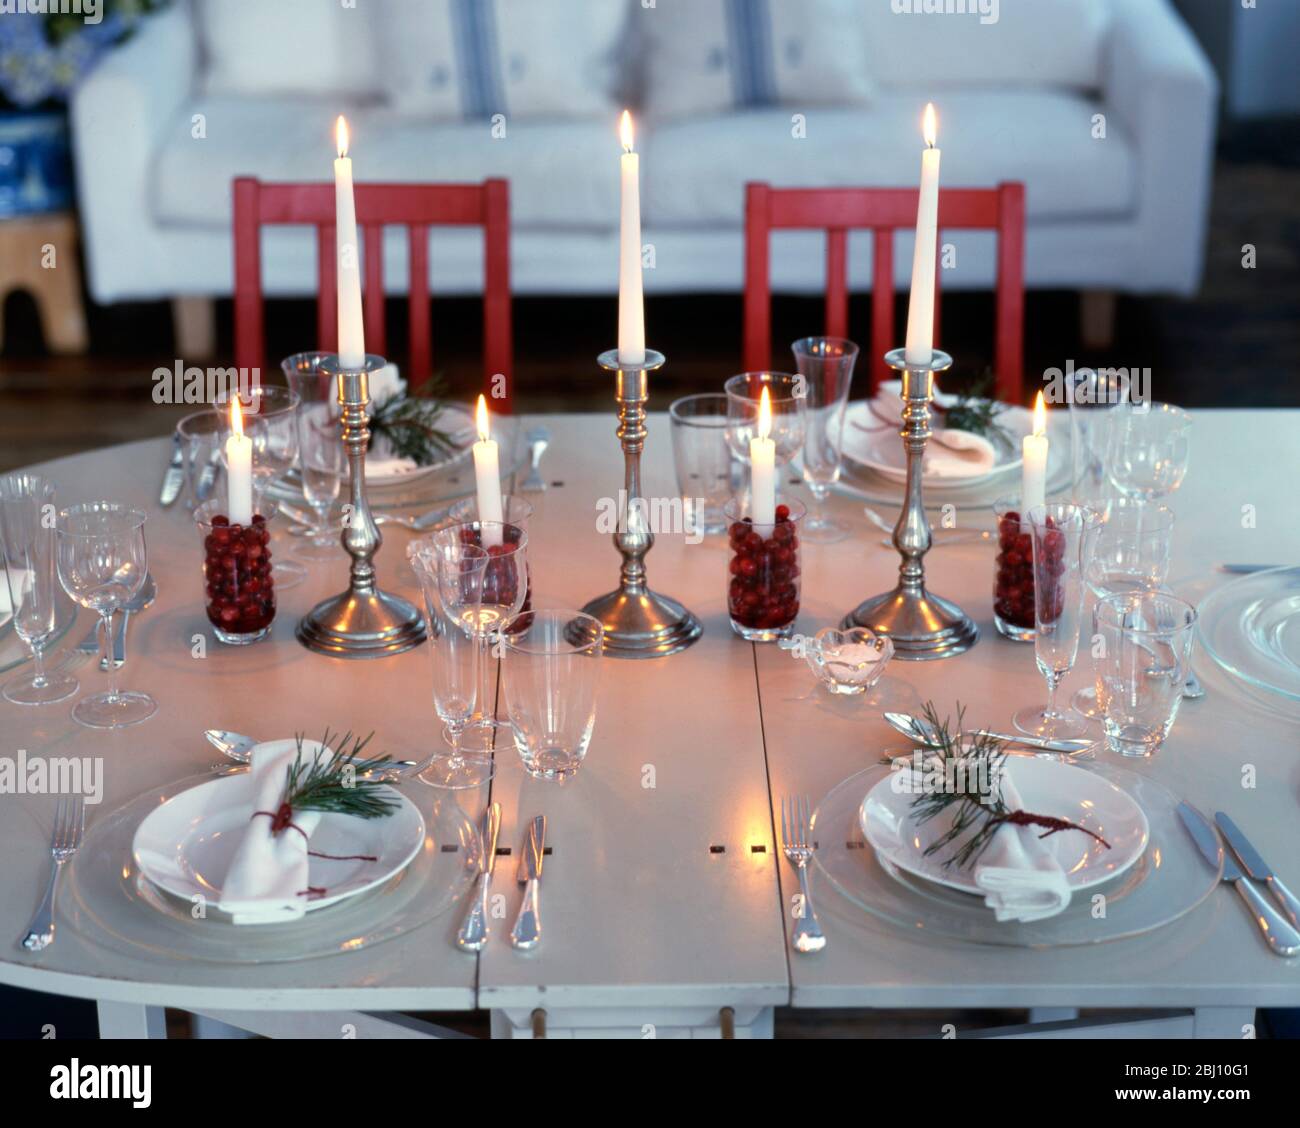 Tischgedeckte für Weihnachtsessen - skandinavischer Stil - Stockfoto